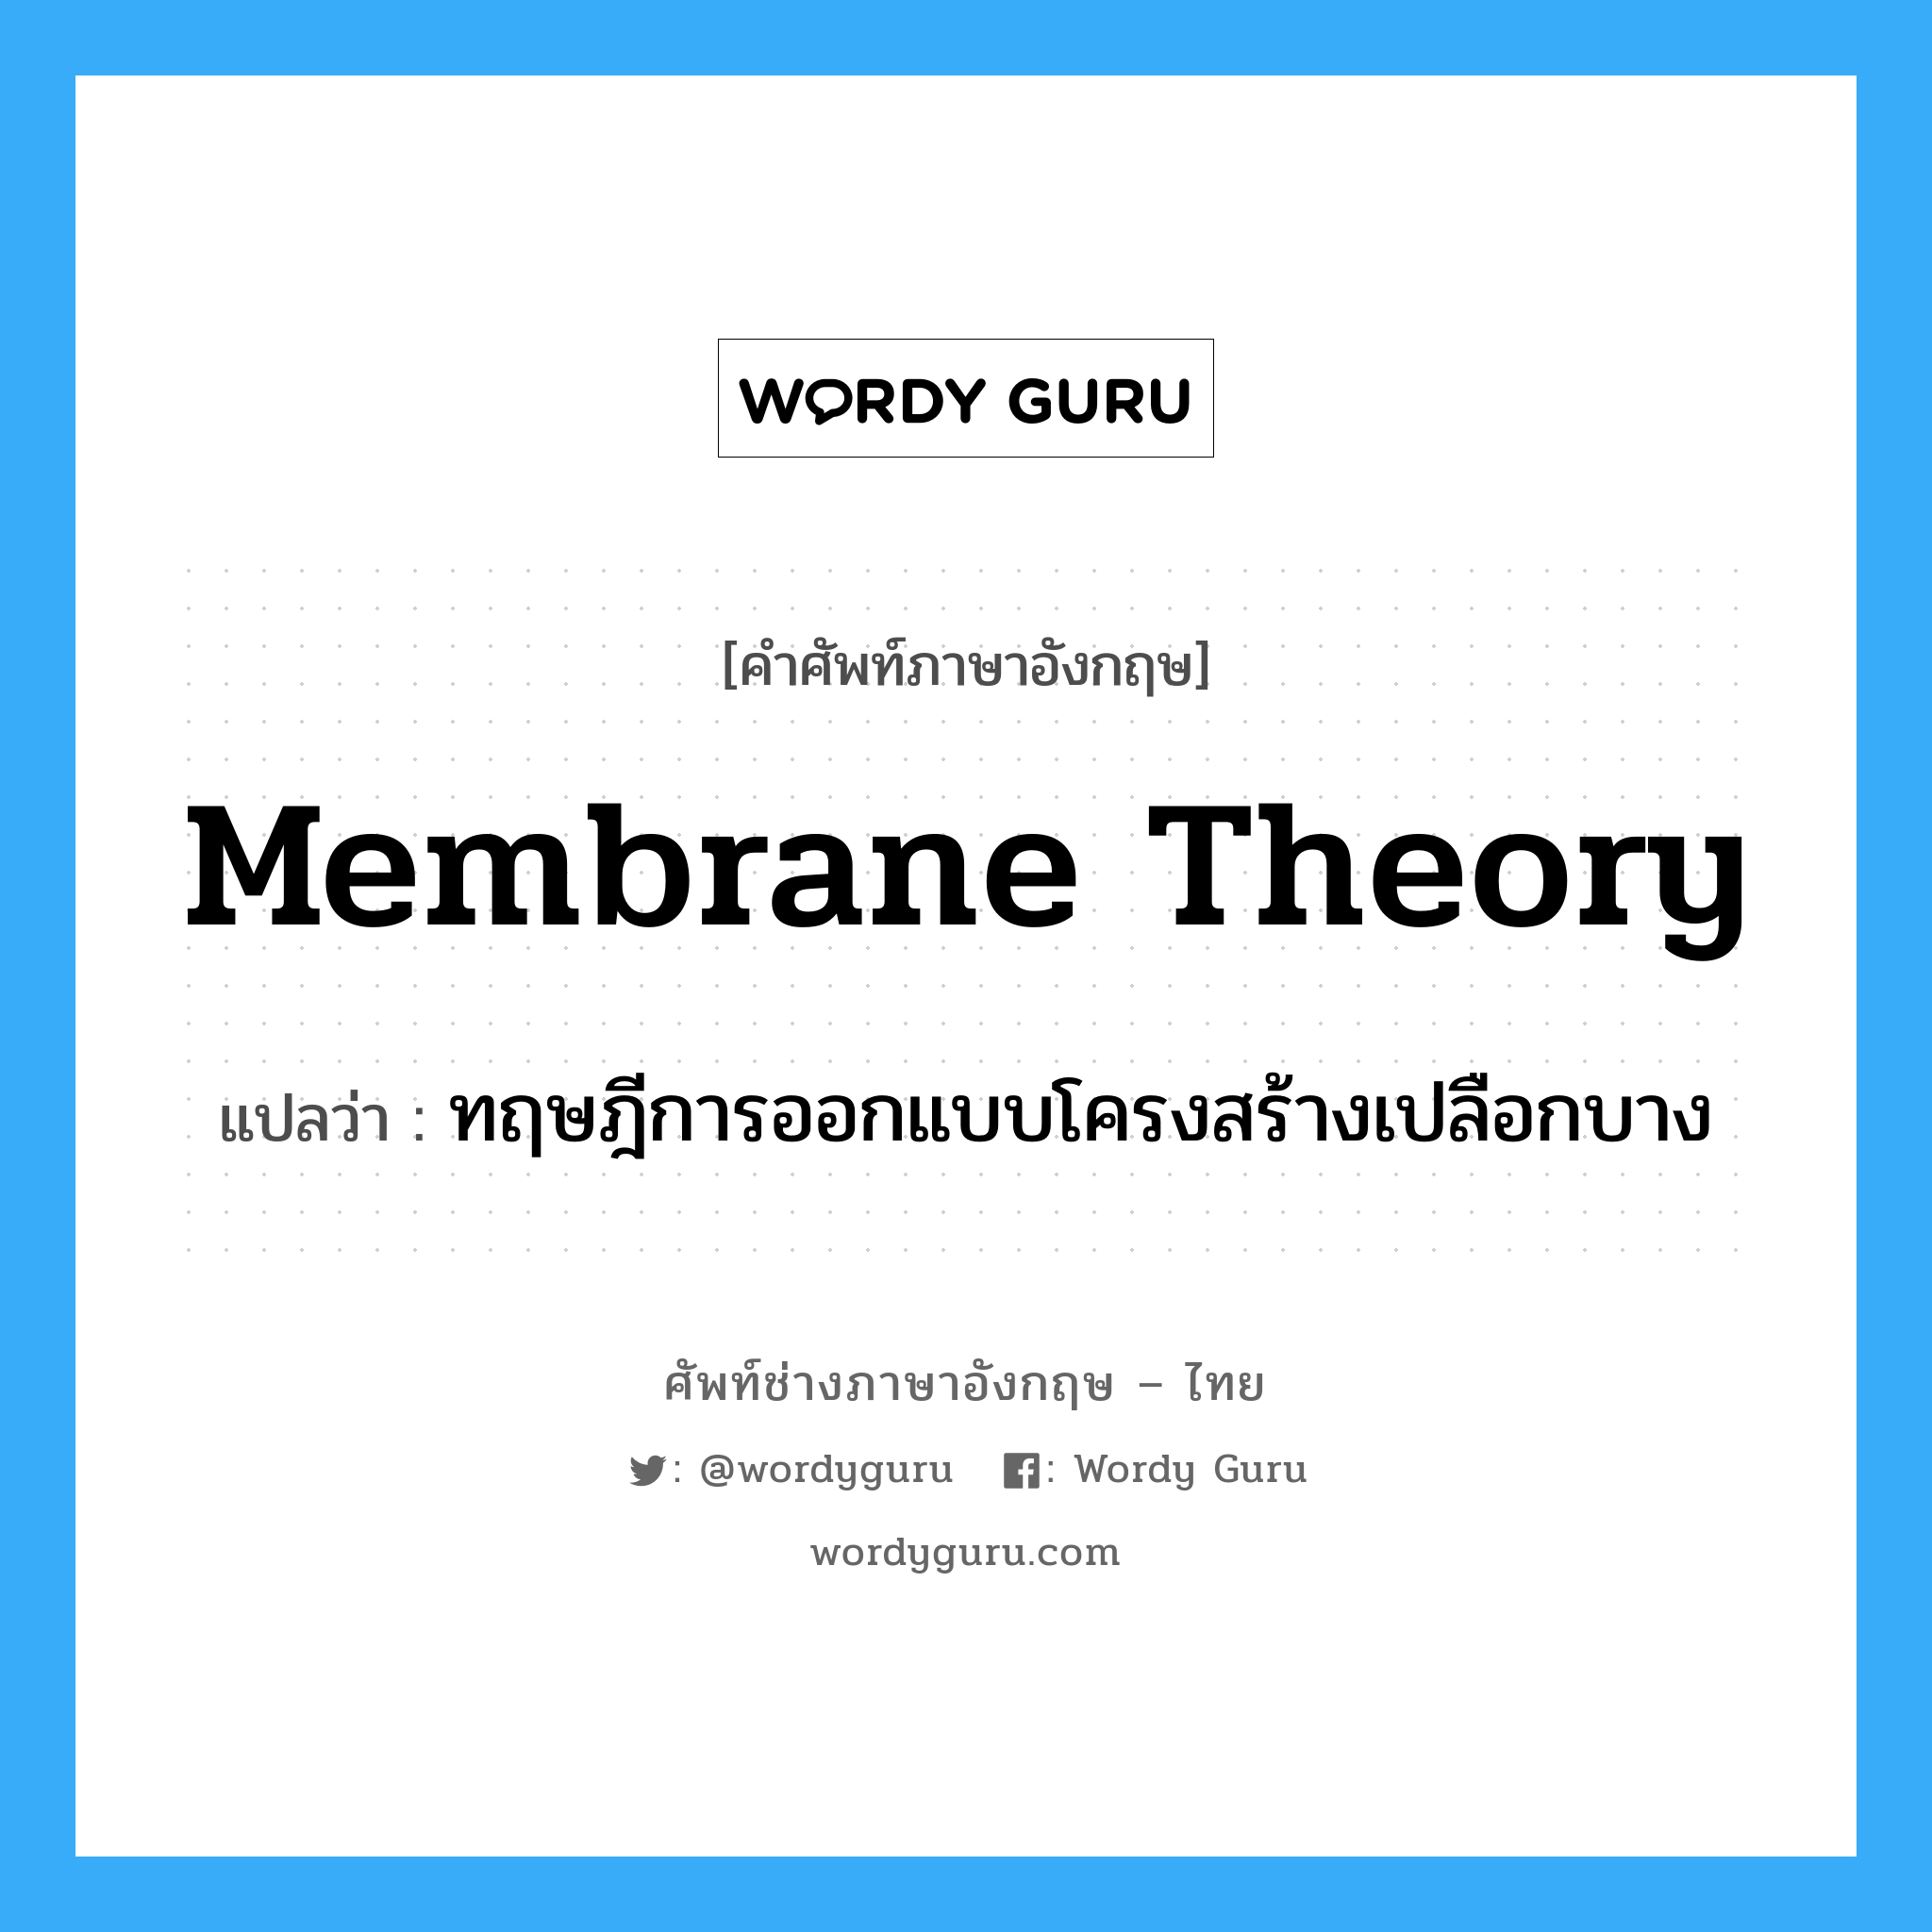 ทฤษฎีการออกแบบโครงสร้างเปลือกบาง ภาษาอังกฤษ?, คำศัพท์ช่างภาษาอังกฤษ - ไทย ทฤษฎีการออกแบบโครงสร้างเปลือกบาง คำศัพท์ภาษาอังกฤษ ทฤษฎีการออกแบบโครงสร้างเปลือกบาง แปลว่า membrane theory